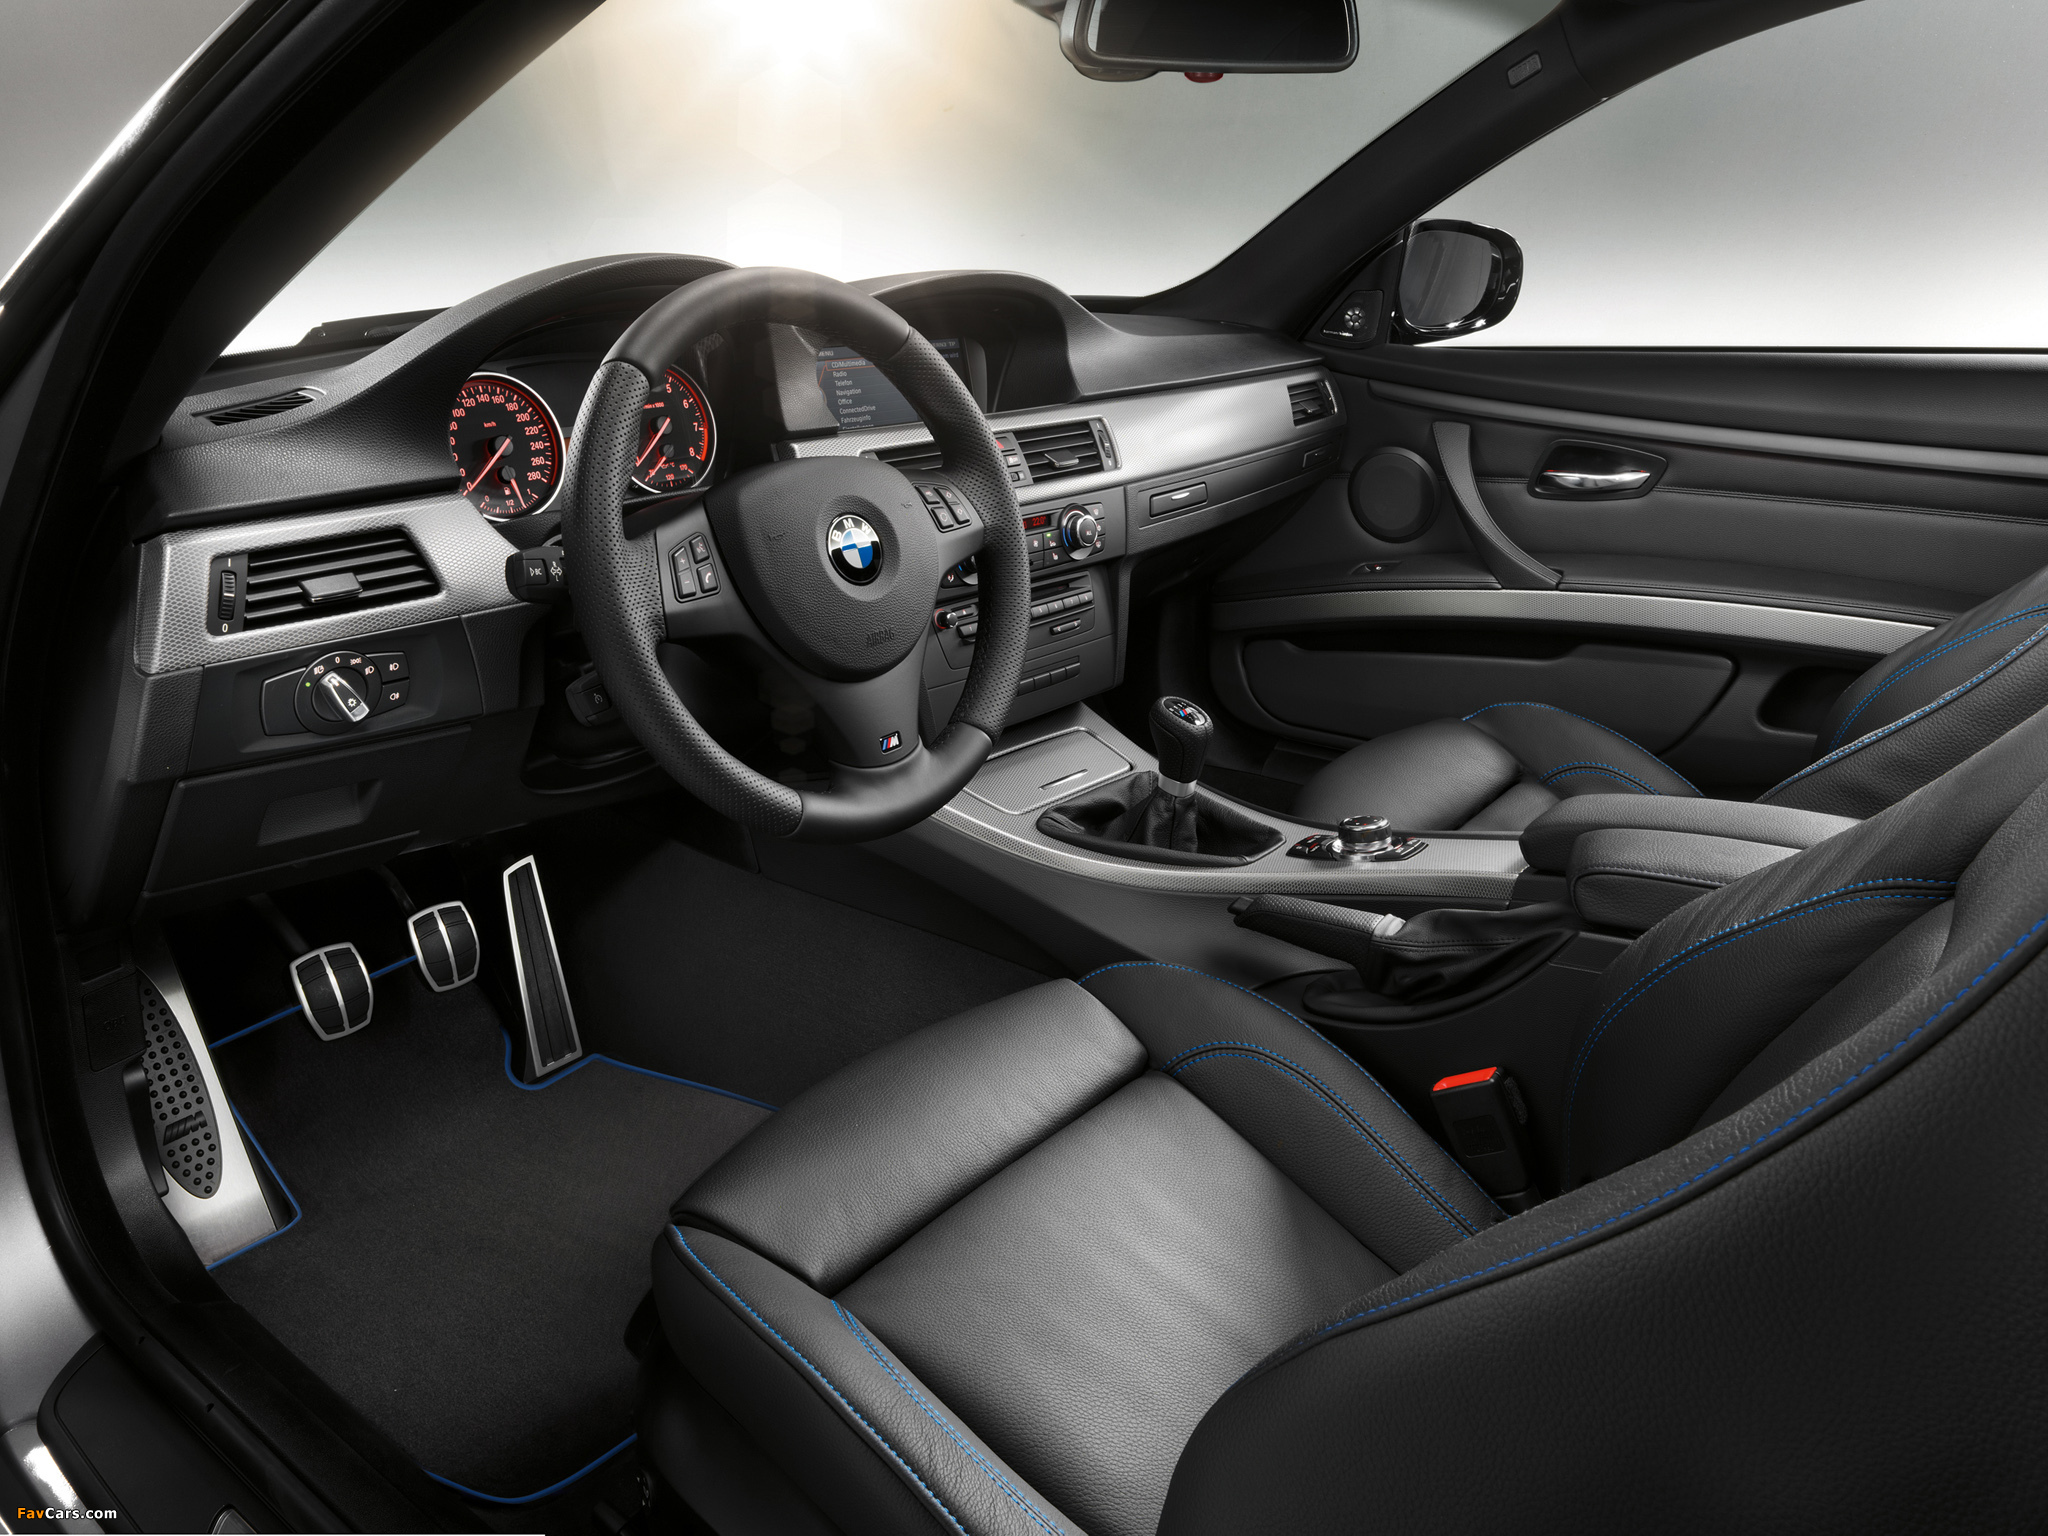 BMW 325i Coupe M Sport Edition (E92) 2011 photos (2048 x 1536)